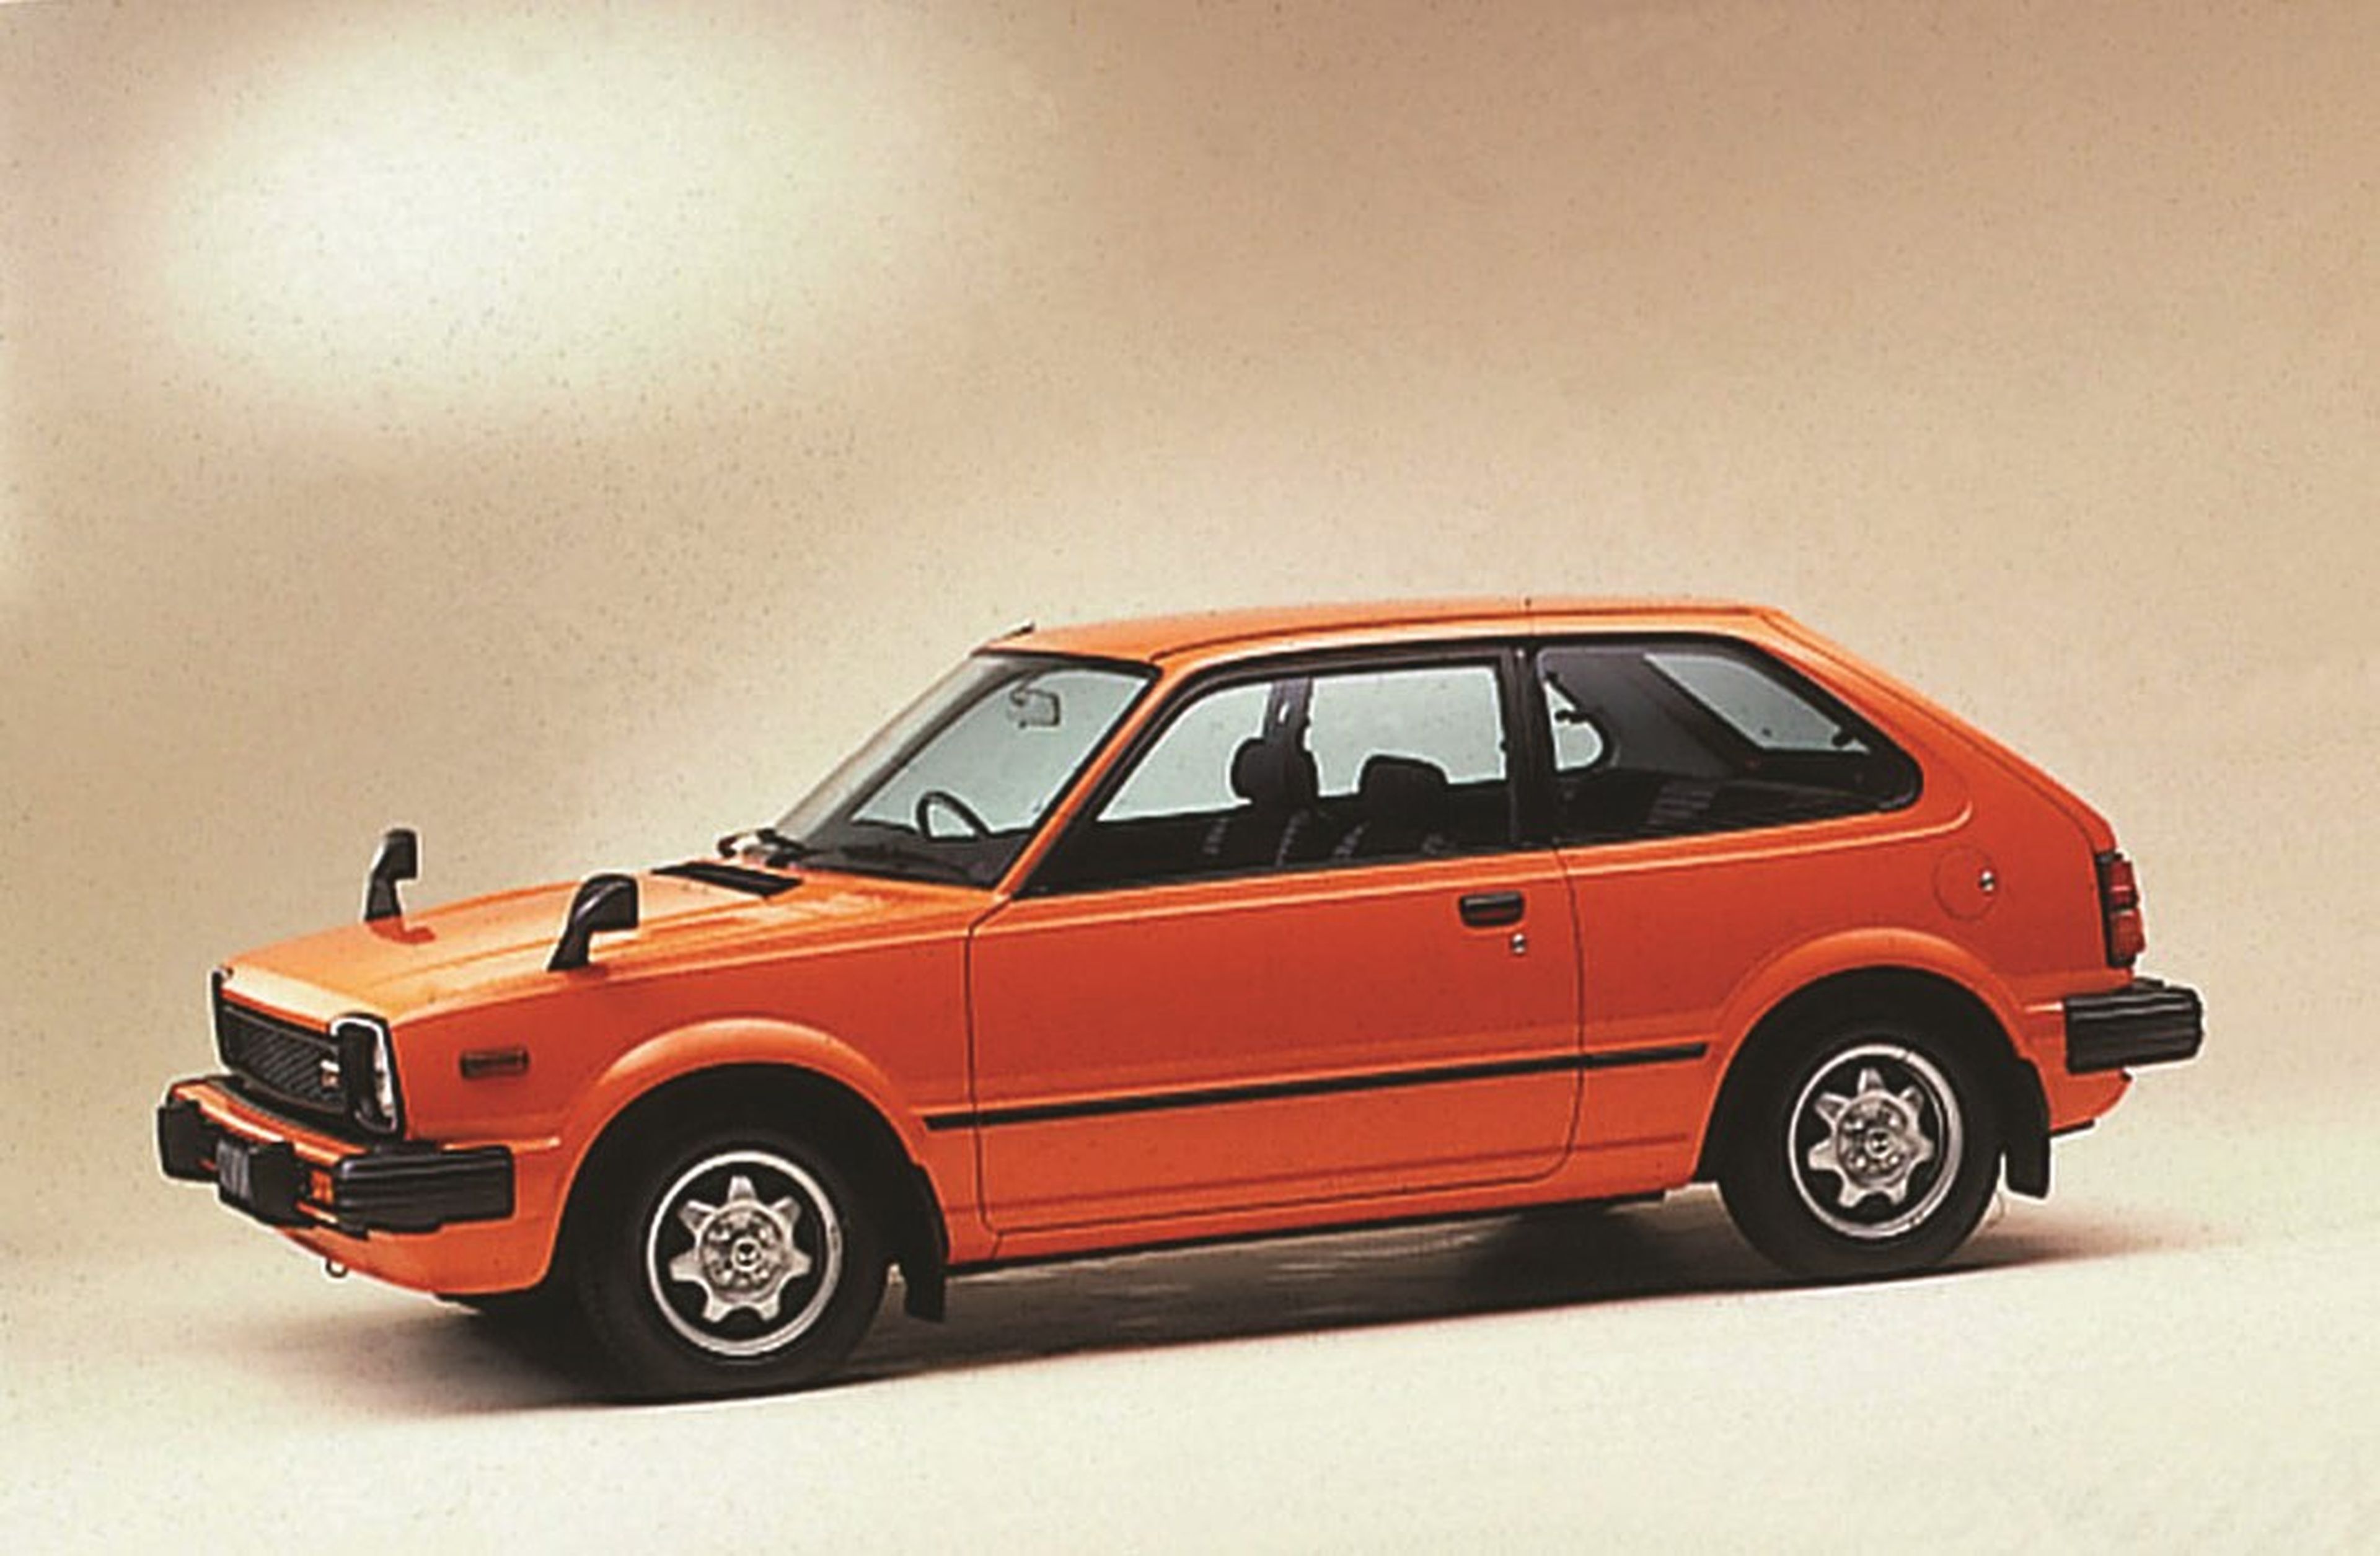 Honda Civic Segunda generación (1980-1983)